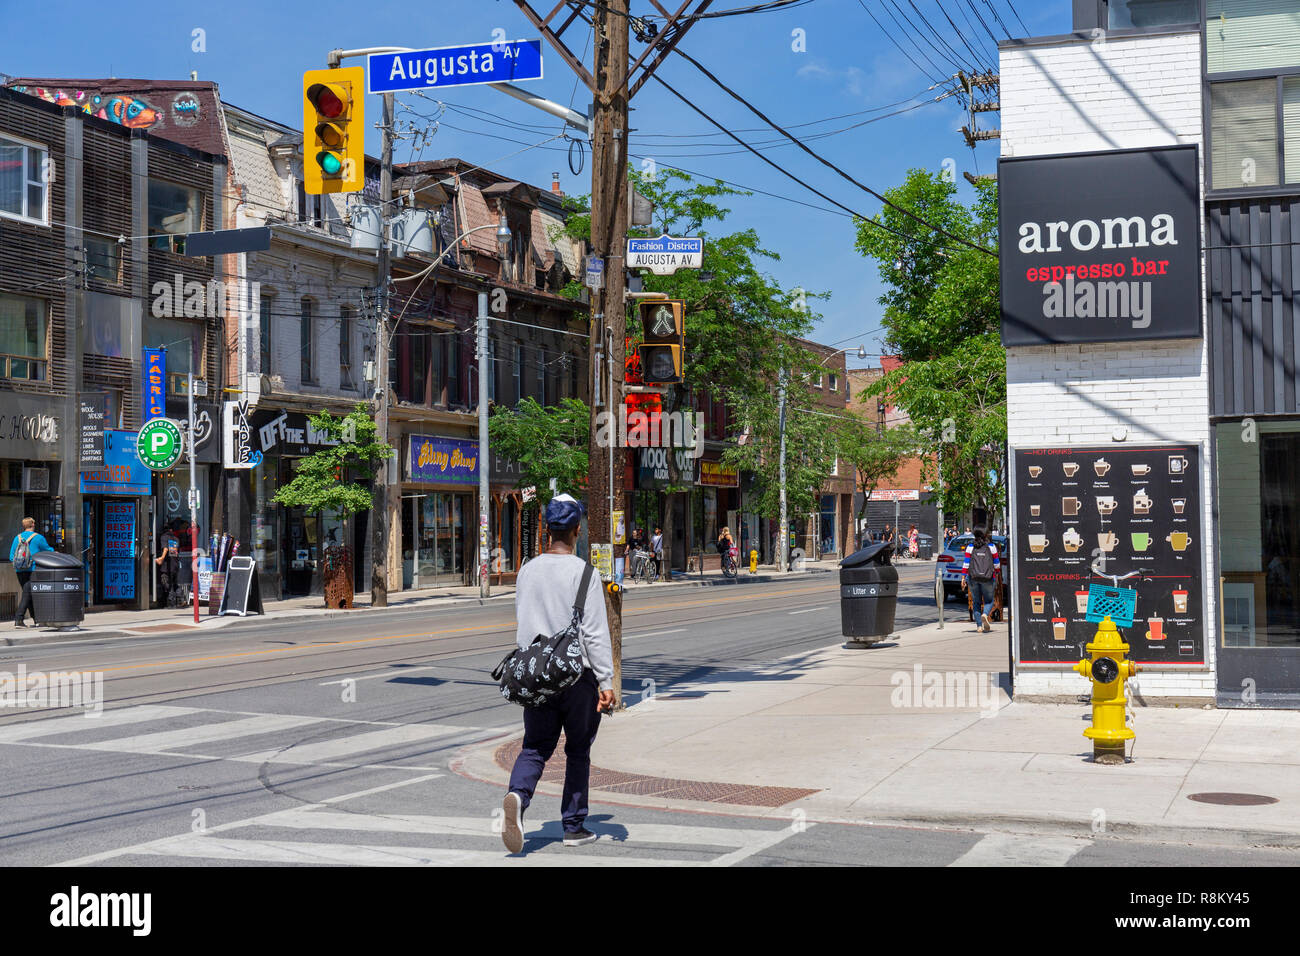 Canada, Provincia di Ontario, città di Toronto, Queen Street West, nuovo quartiere alla moda, incrocio con Via Augusta, Aroma espresso bar e zona pedonale Foto Stock